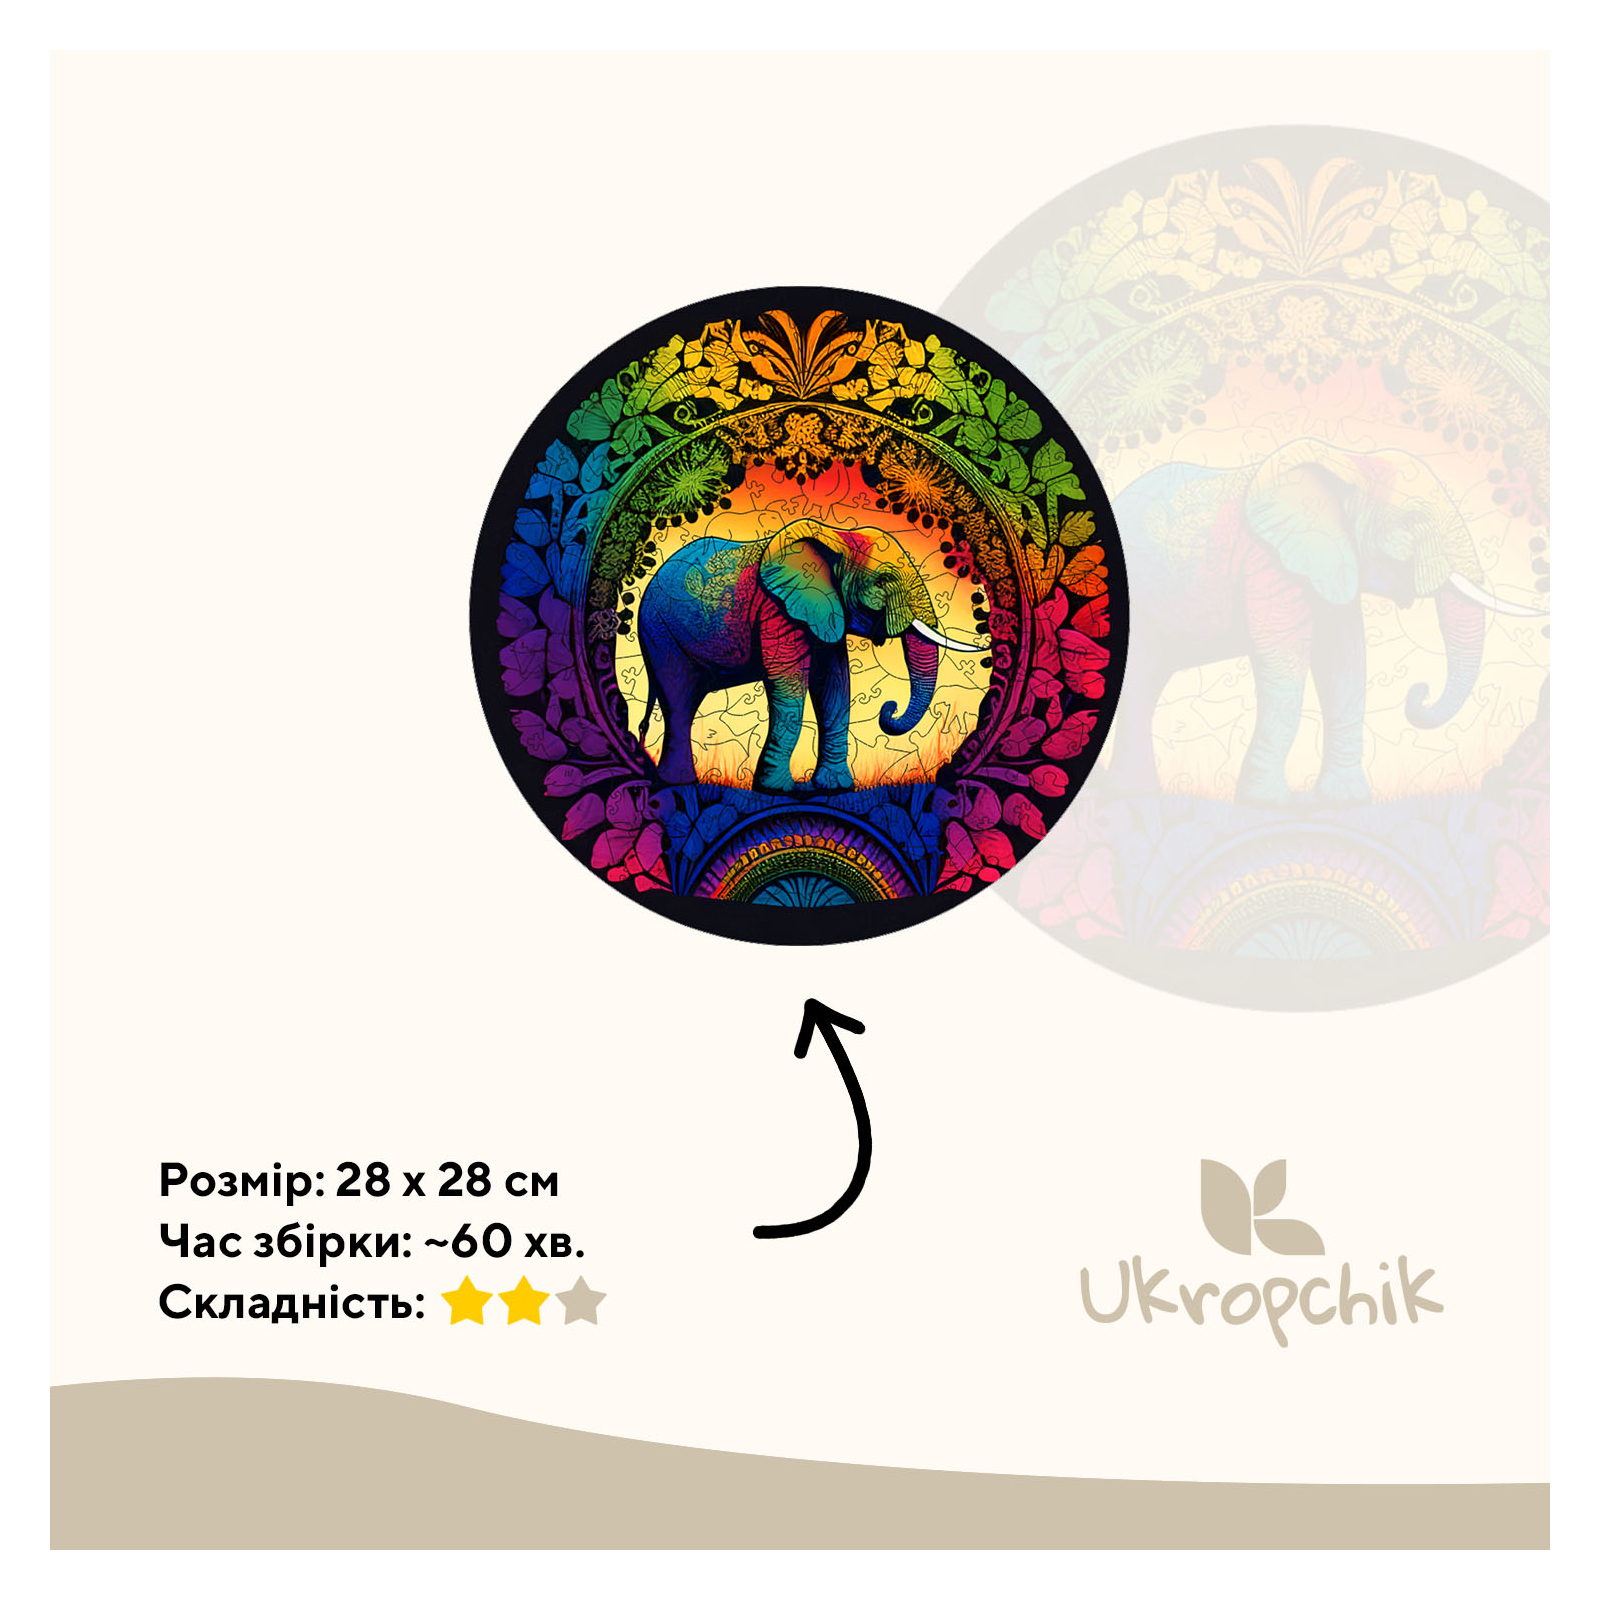 Пазл Ukropchik дерев'яний Слон Мандала size - L в коробці з набором-рамкою (Elephant Mandala A3) зображення 2